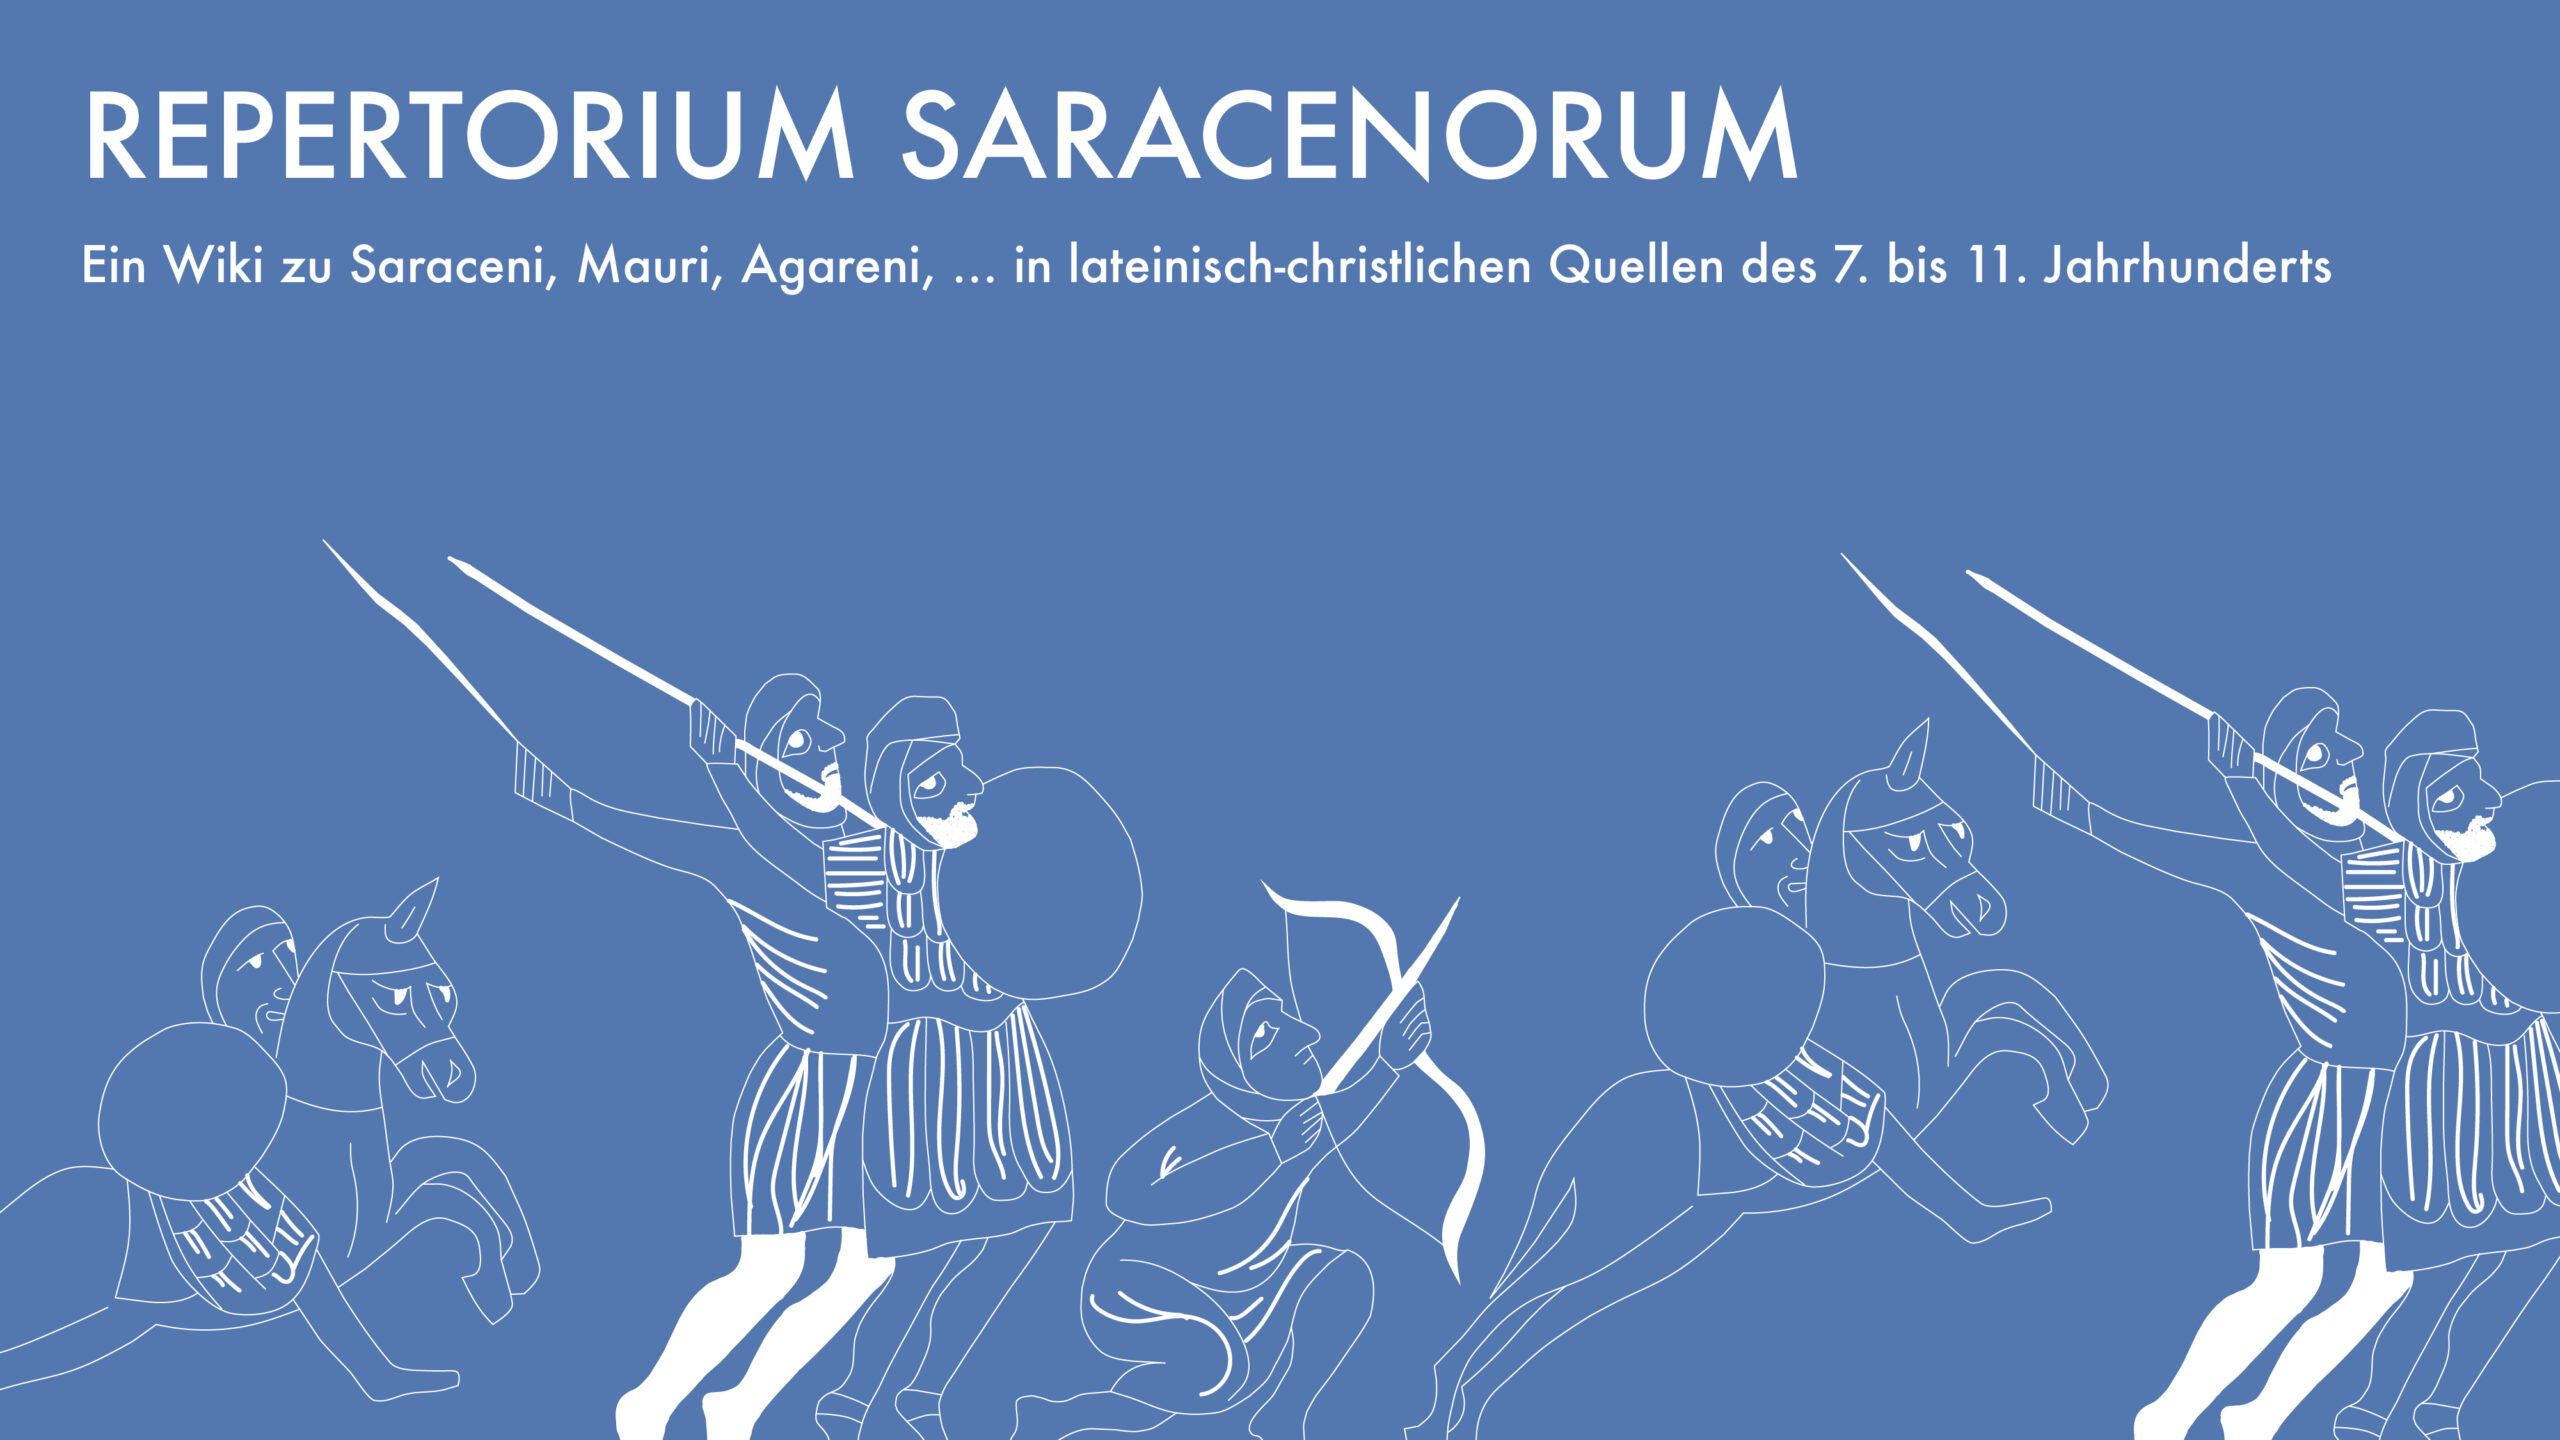 Veröffentlichung von “Repertorium Saracenorum”